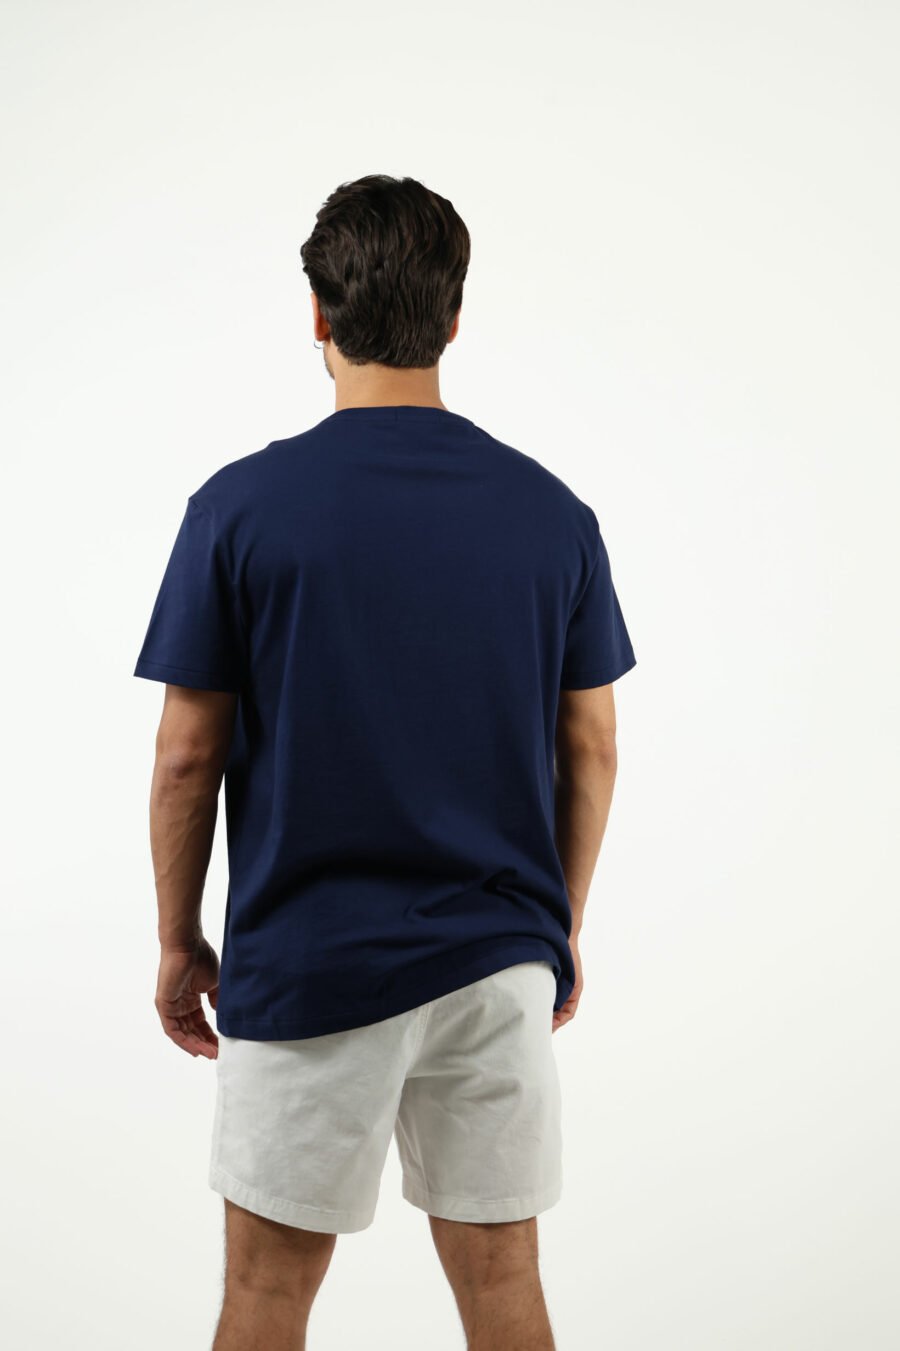 Camiseta azul oscura con maxilogo "polo bear" traje - number14037